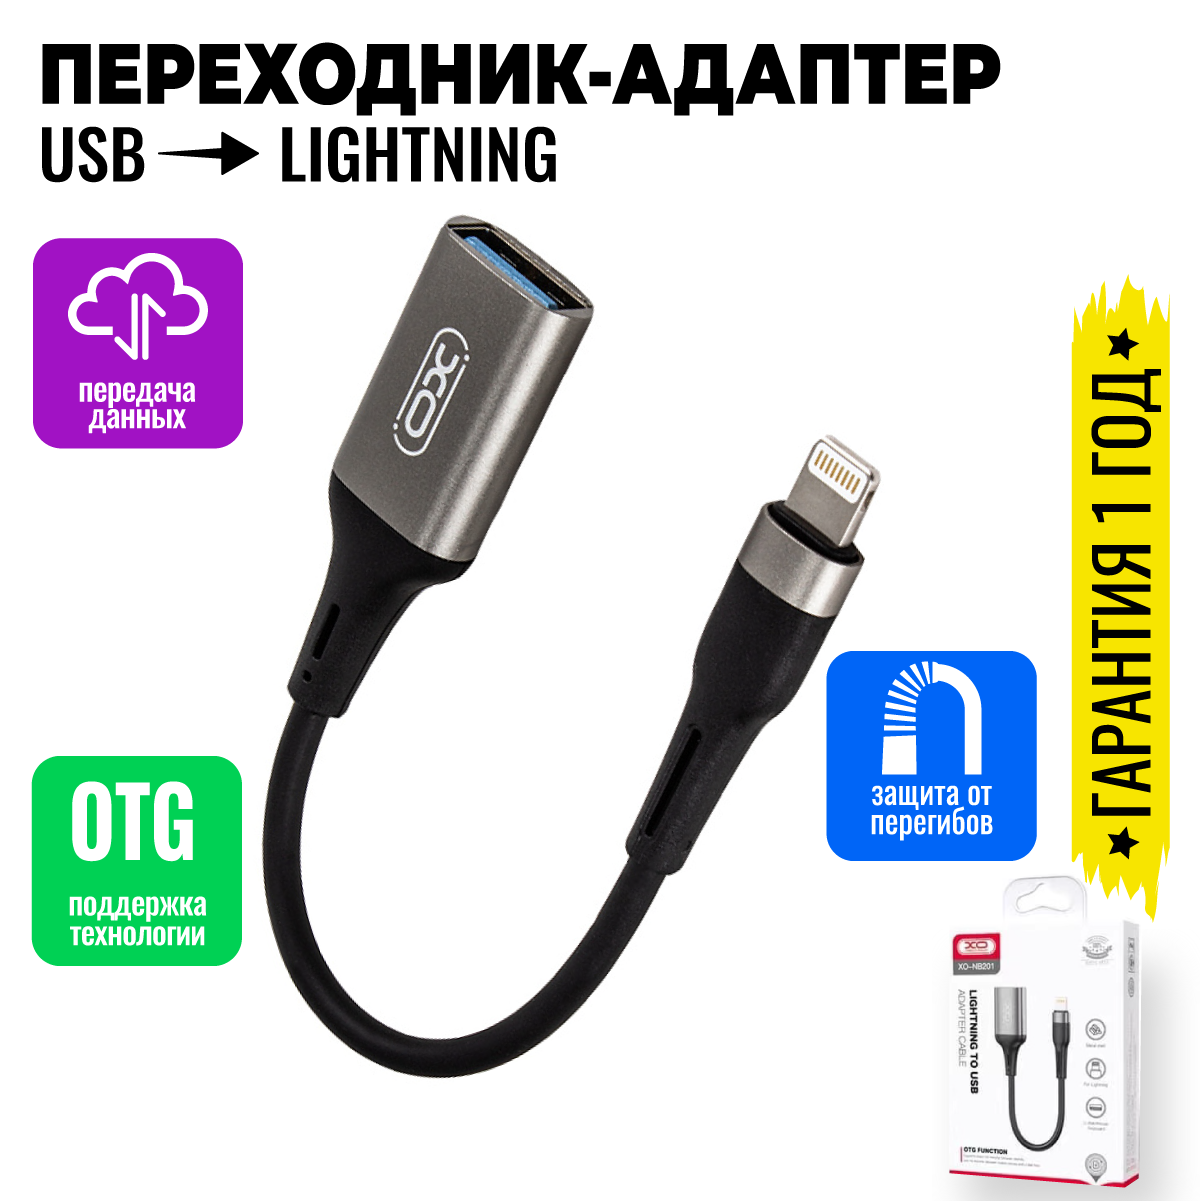 Адаптер переходник с Lightning на USB OTG для телефонов, планшетов, смартфонов и компьютеров / XO NB201